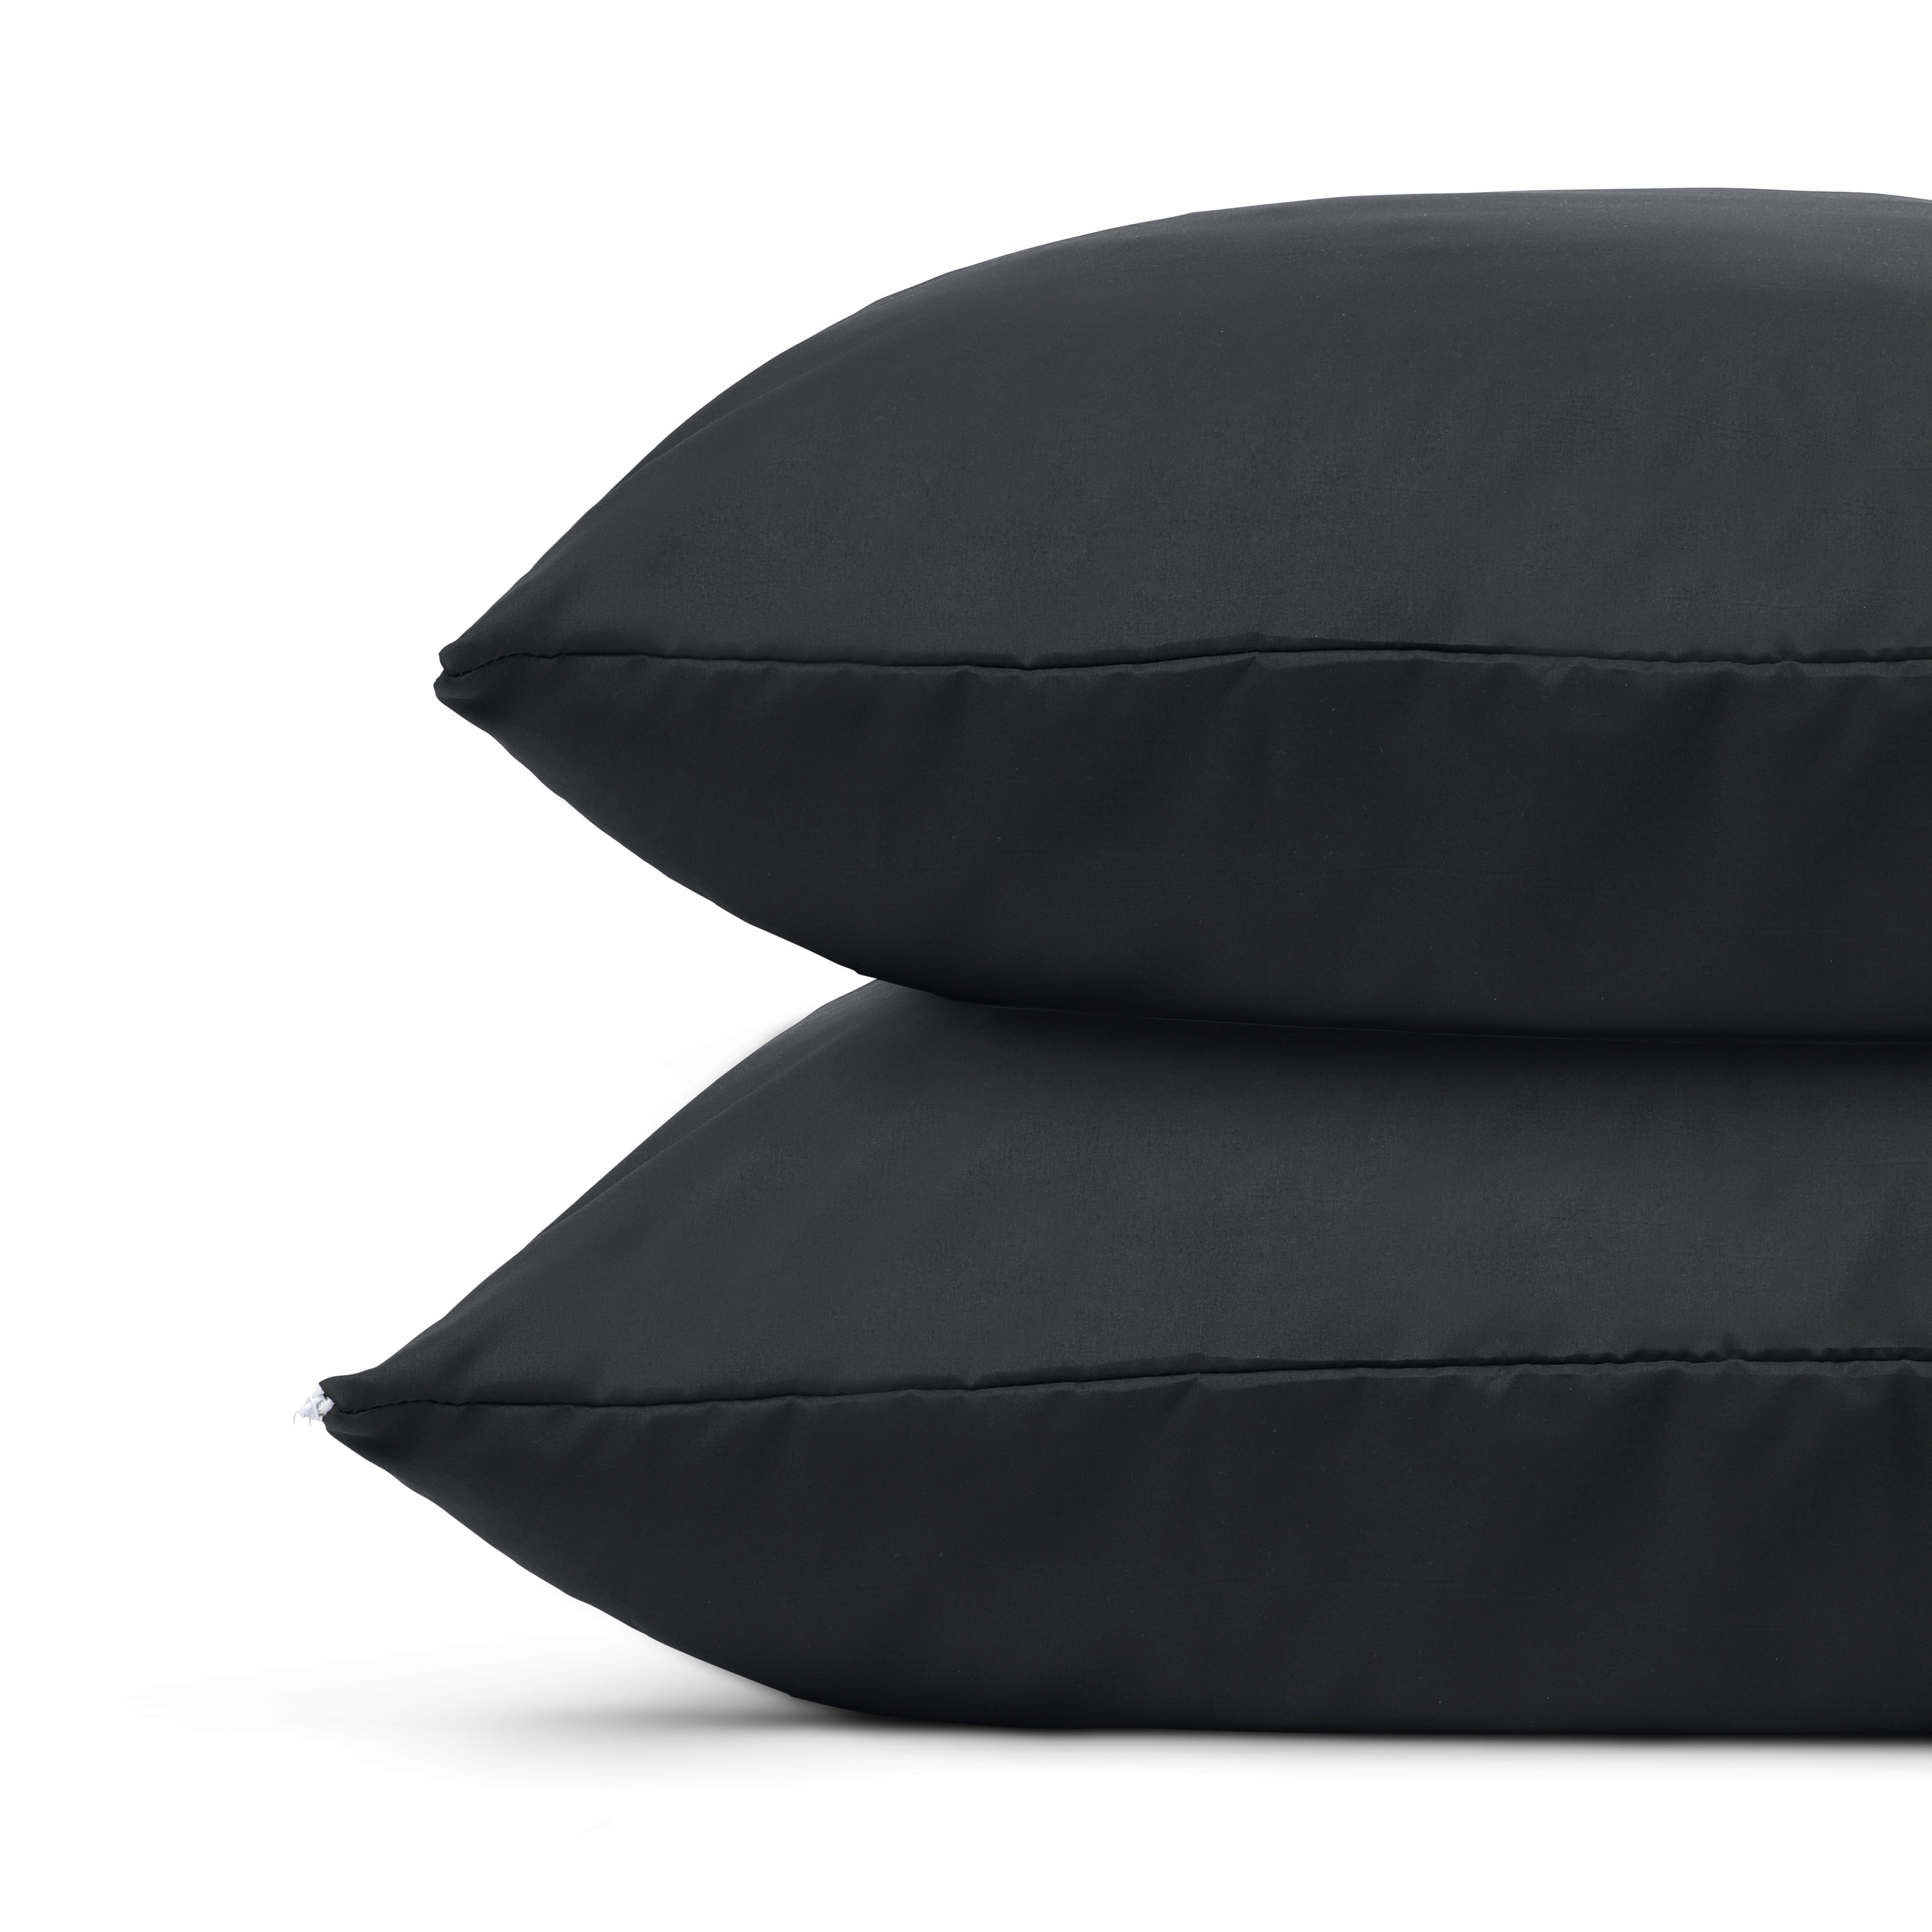 HappyDuvet | Black pillowcase set 2 pieces - 60x70cm - 100% Microfibre